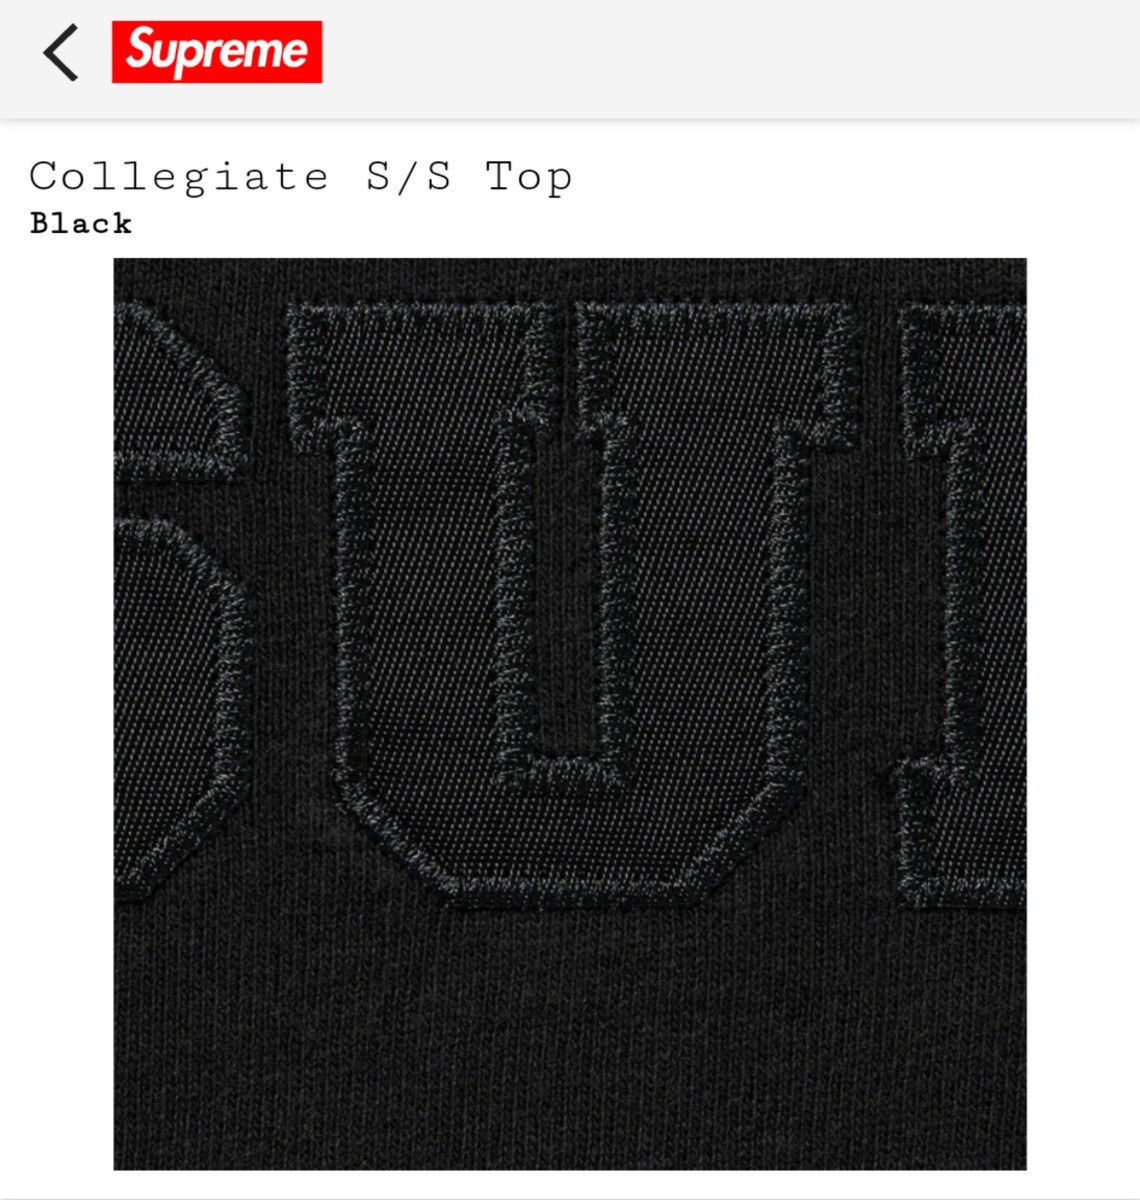 Supreme Collegiate S/S Top Black S Tシャツ